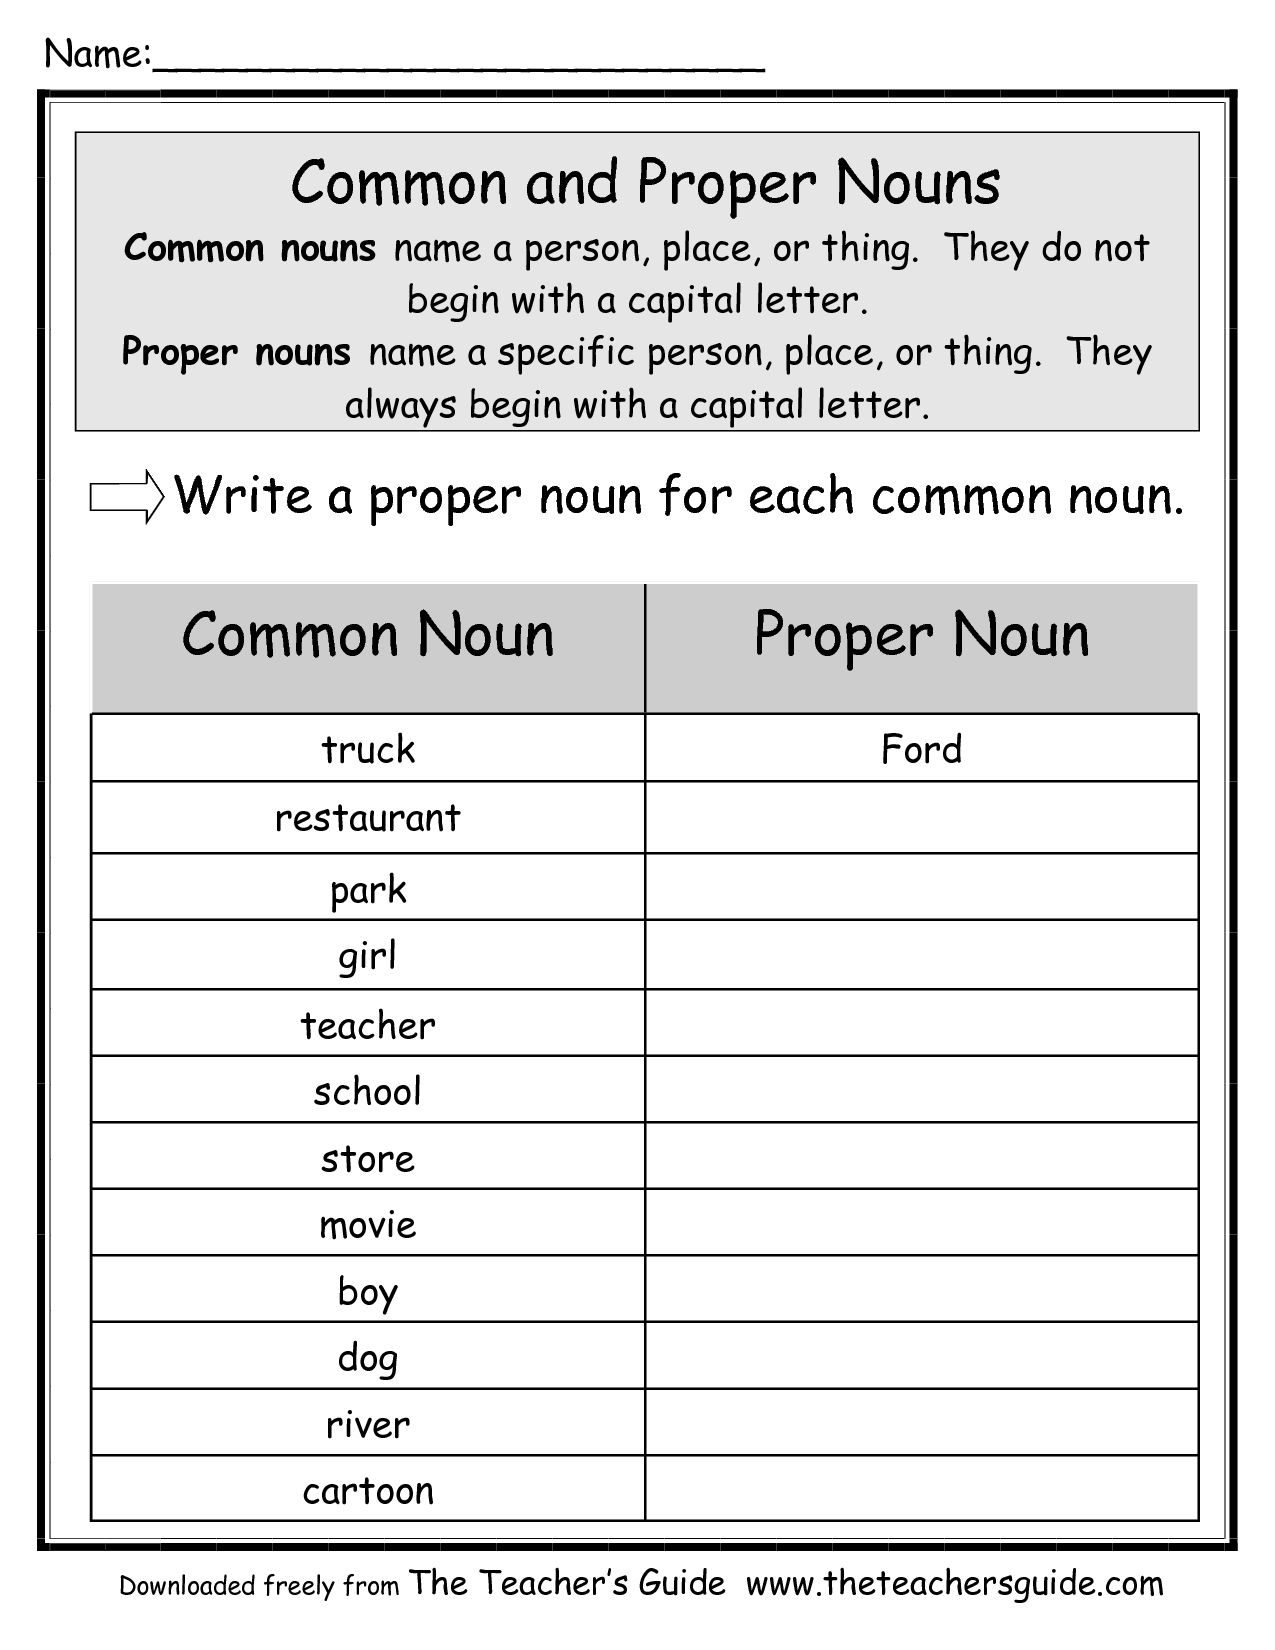 17-pronoun-coloring-worksheet-worksheeto